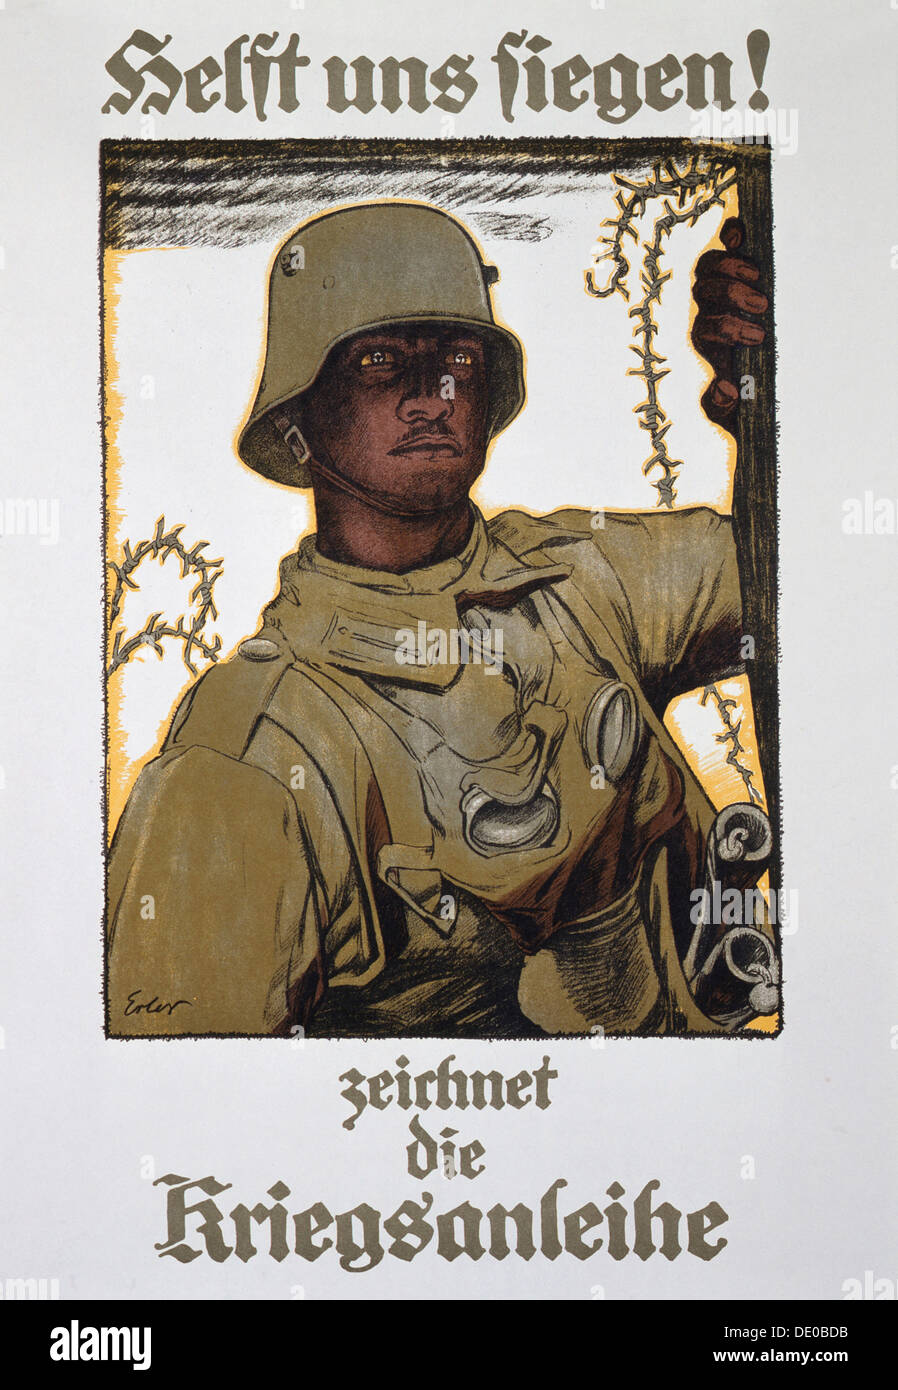 'Helft uns siegen! - zeichnet die Kriegsanleihe', German propaganda poster, World War I, 1917. Artist: Fritz Erler Stock Photo